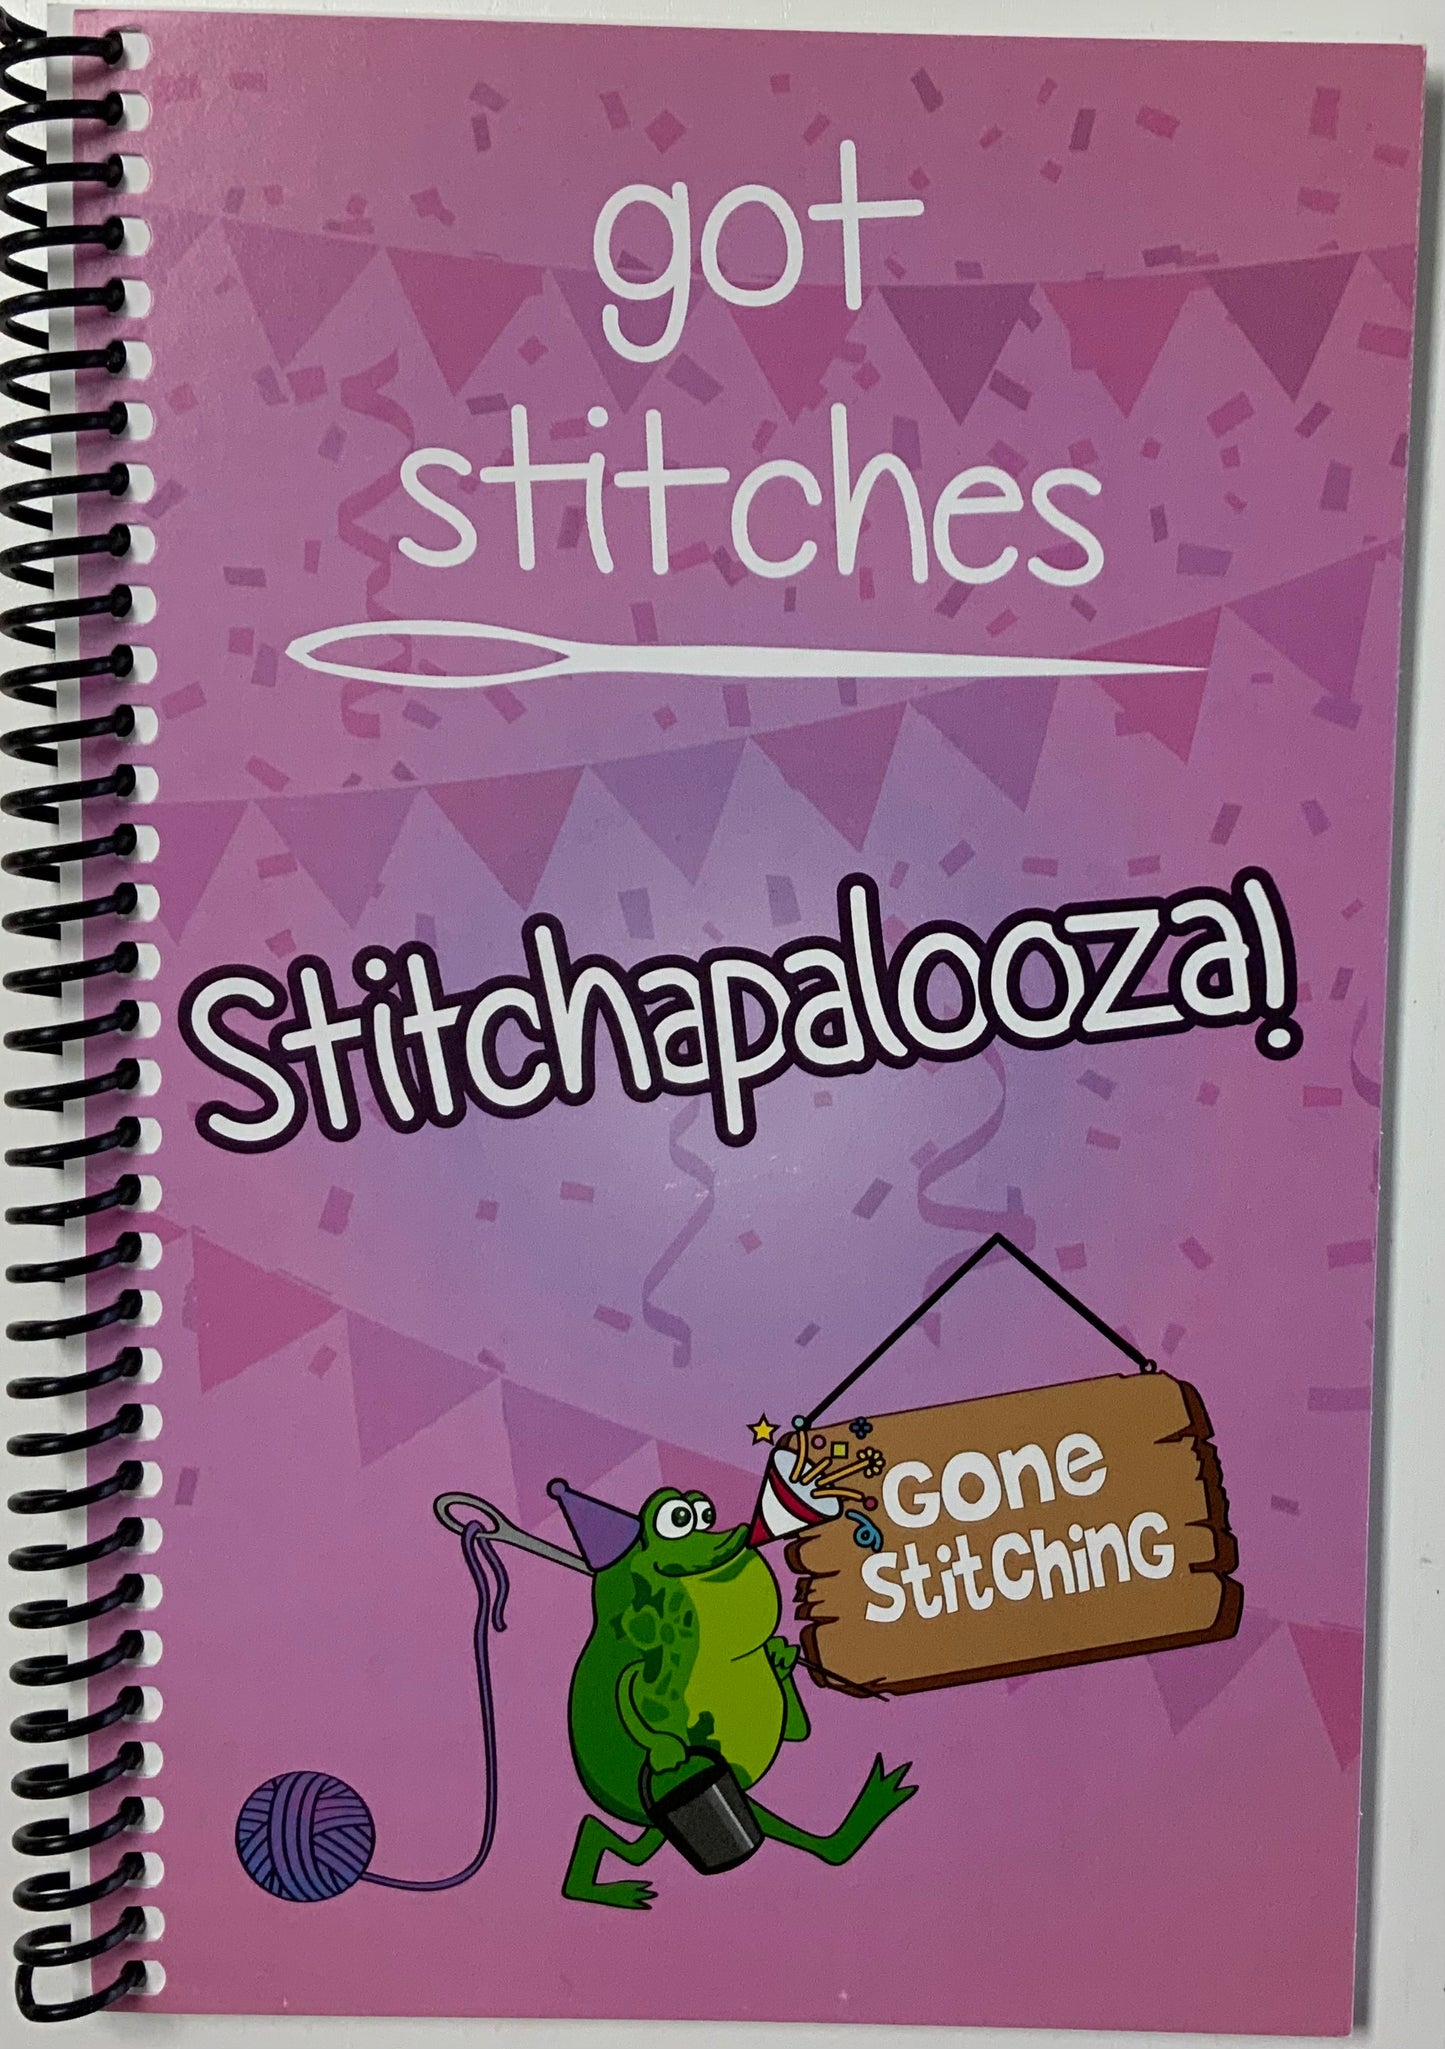 Book Stitchapalooza Got Stitches Gone Stitching